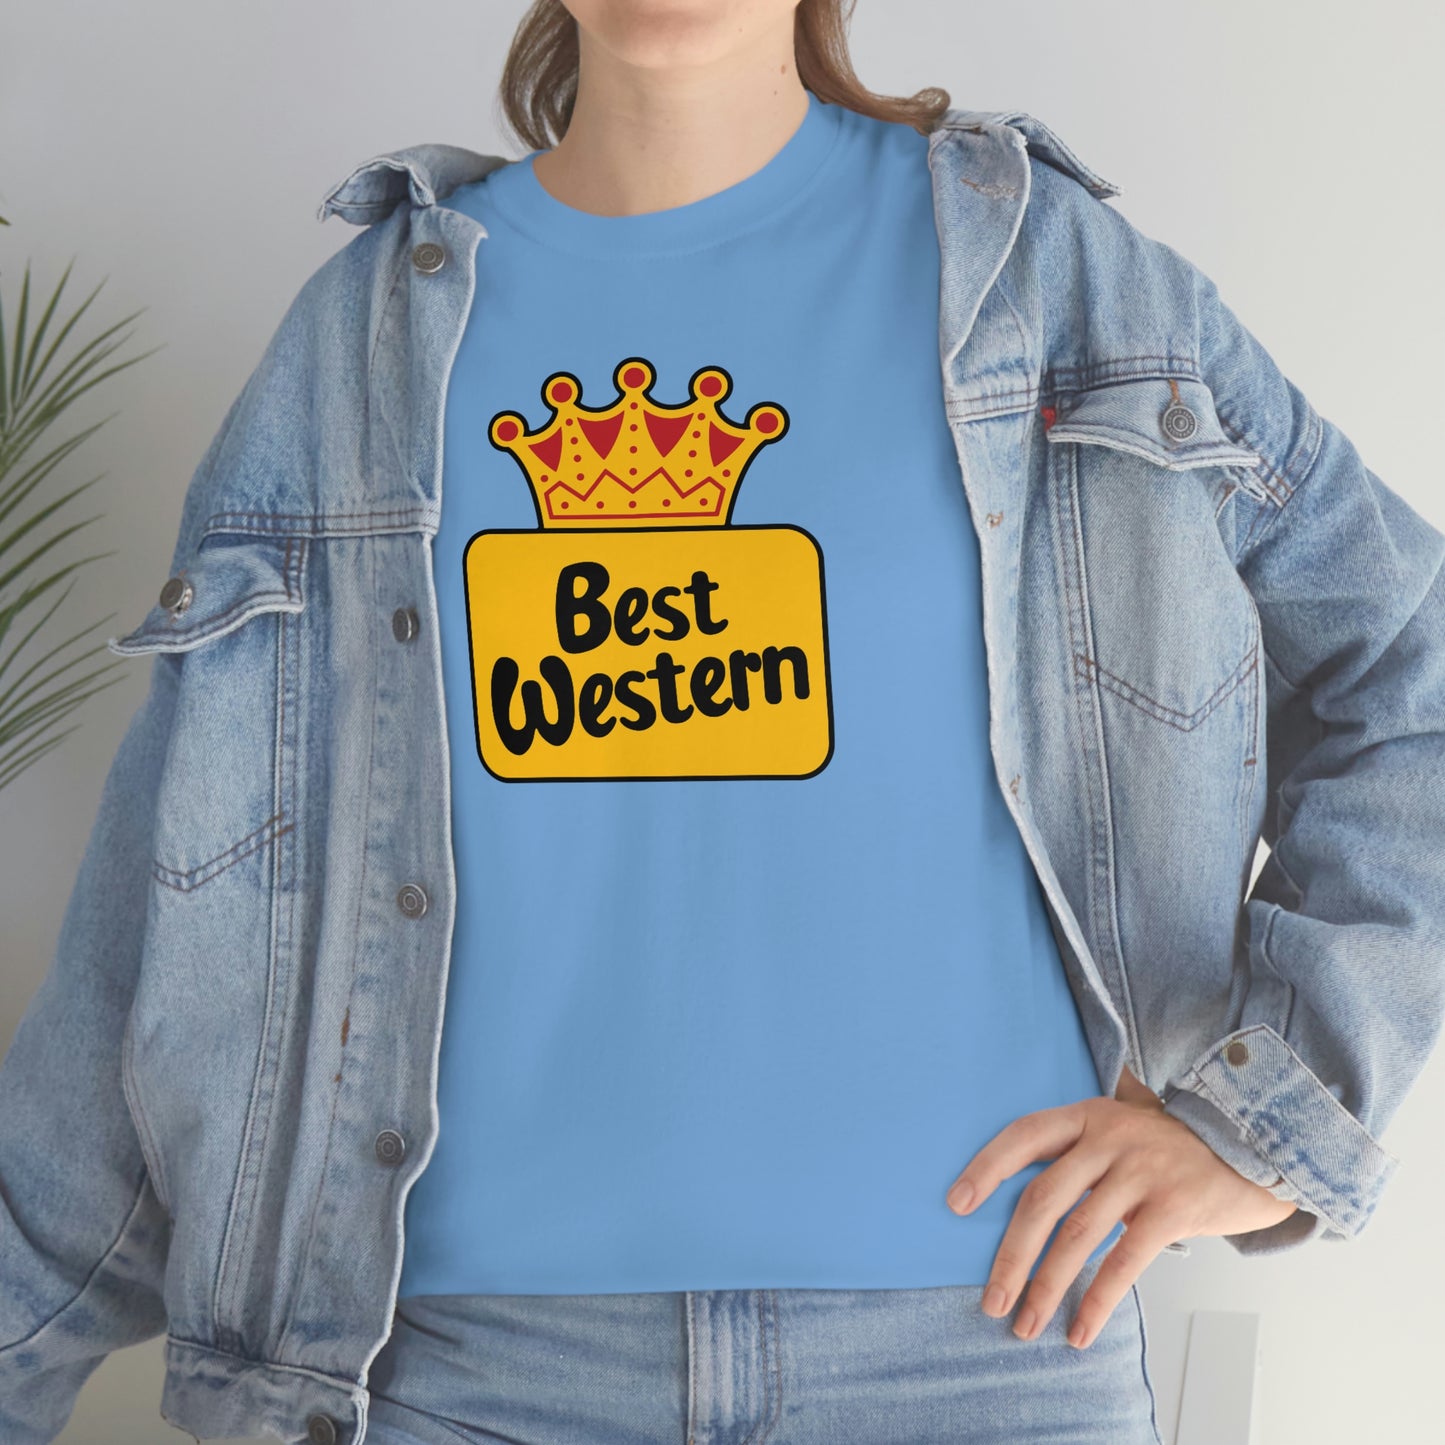 Best Western T-Shirt